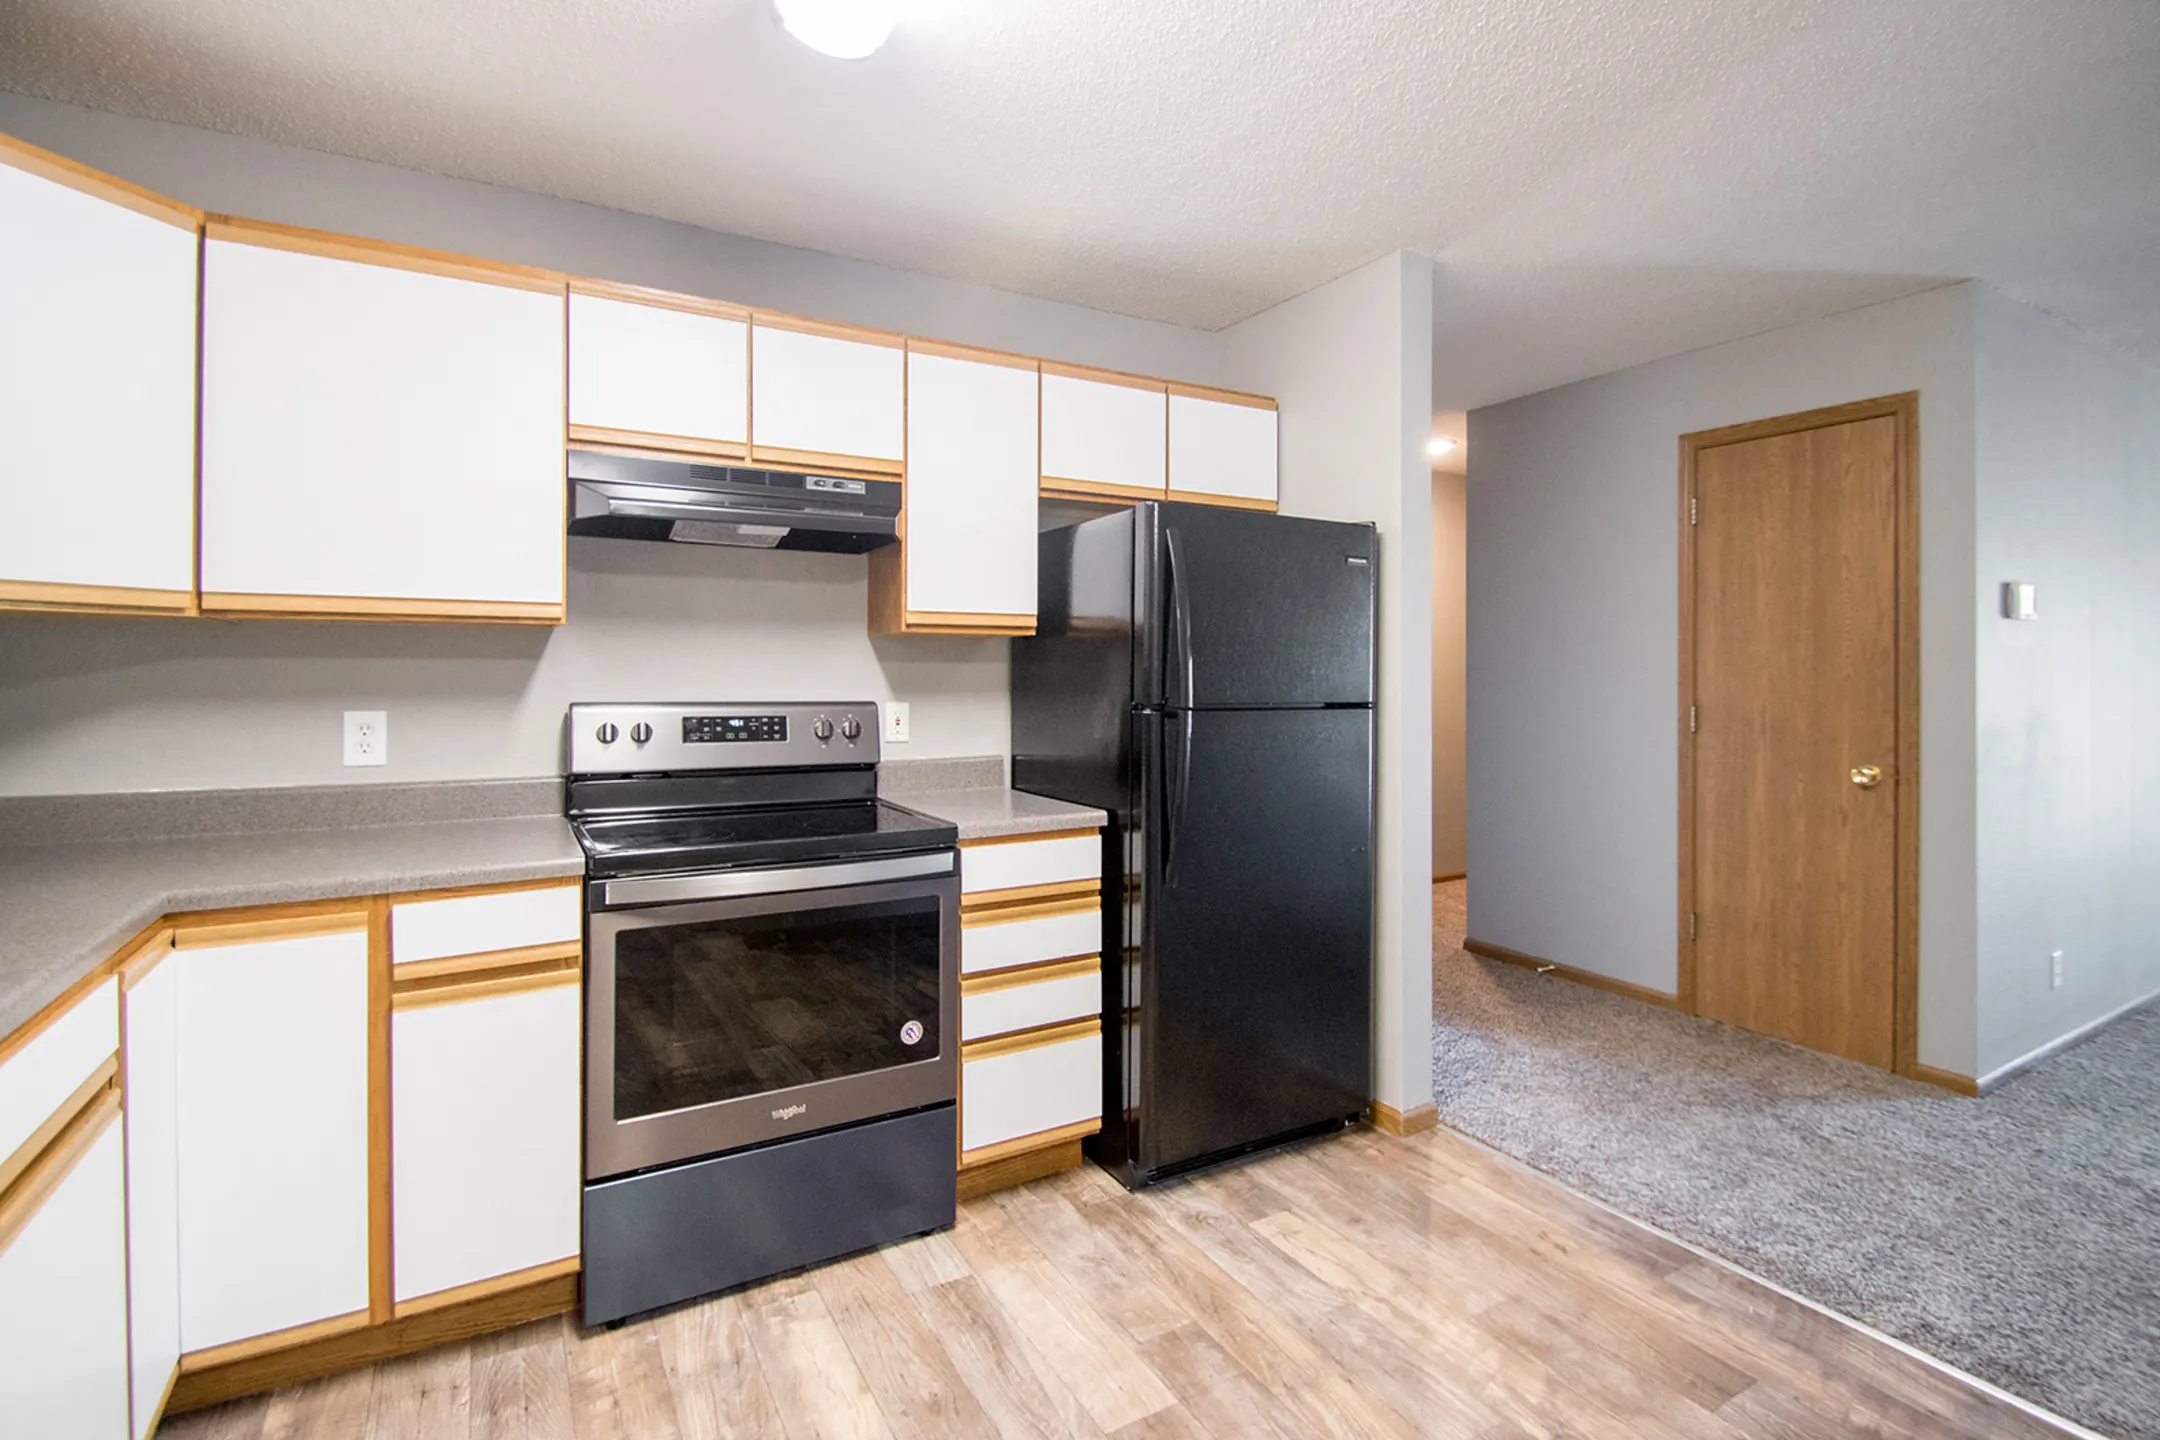 Kitchen - Marshall Apartments - Lincoln, NE